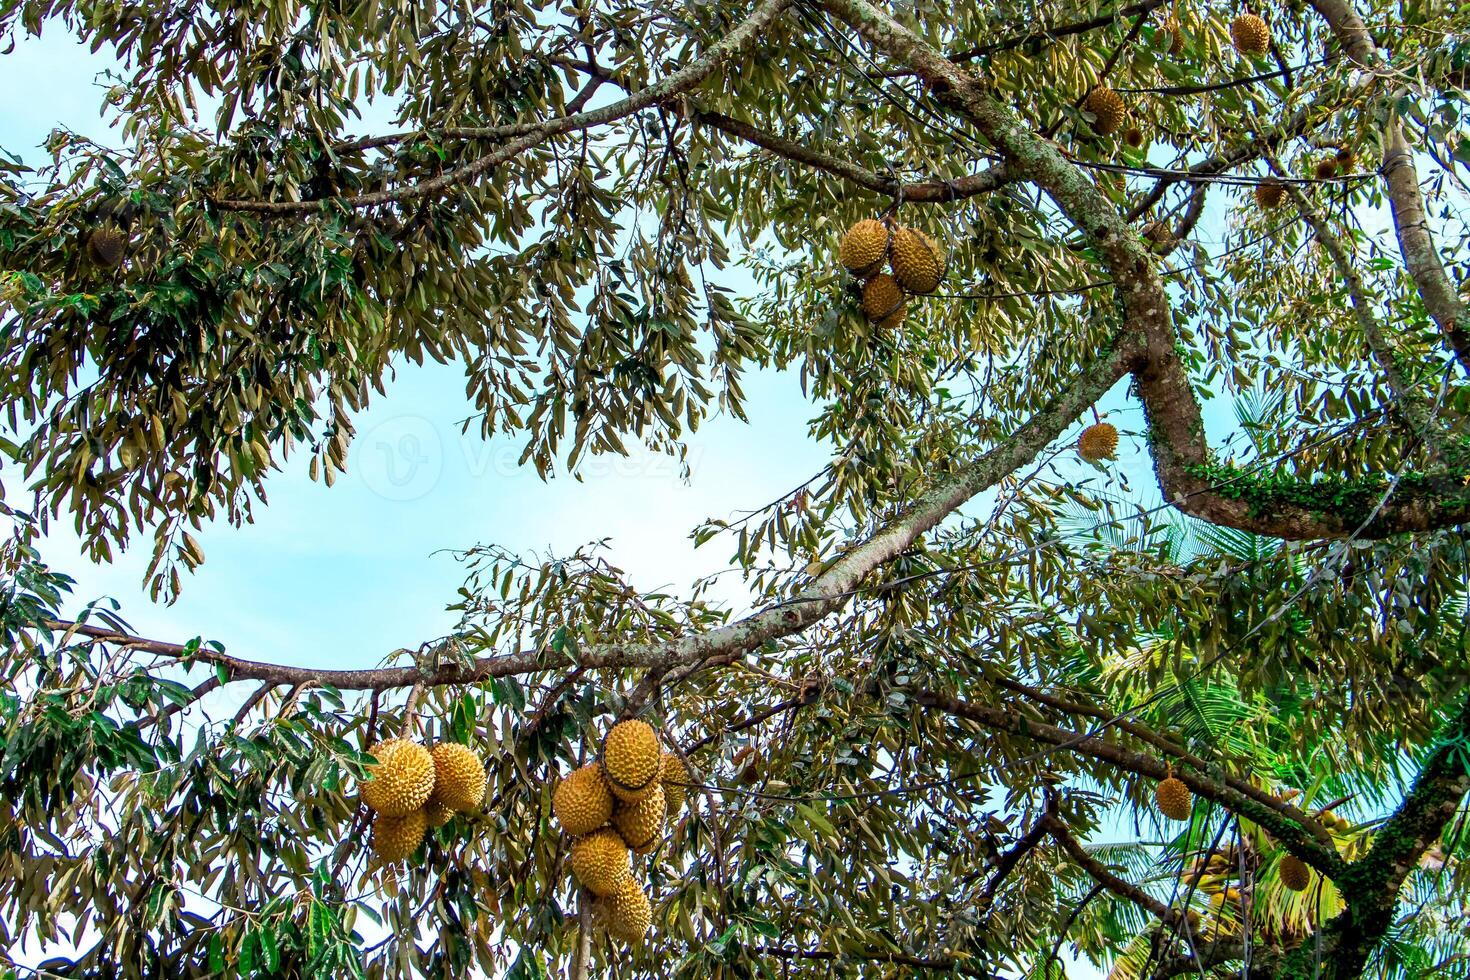 Frais local indonésien durian. le durian est encore sur le arbre, maintenir ses fraîcheur. le durian arbre. photo